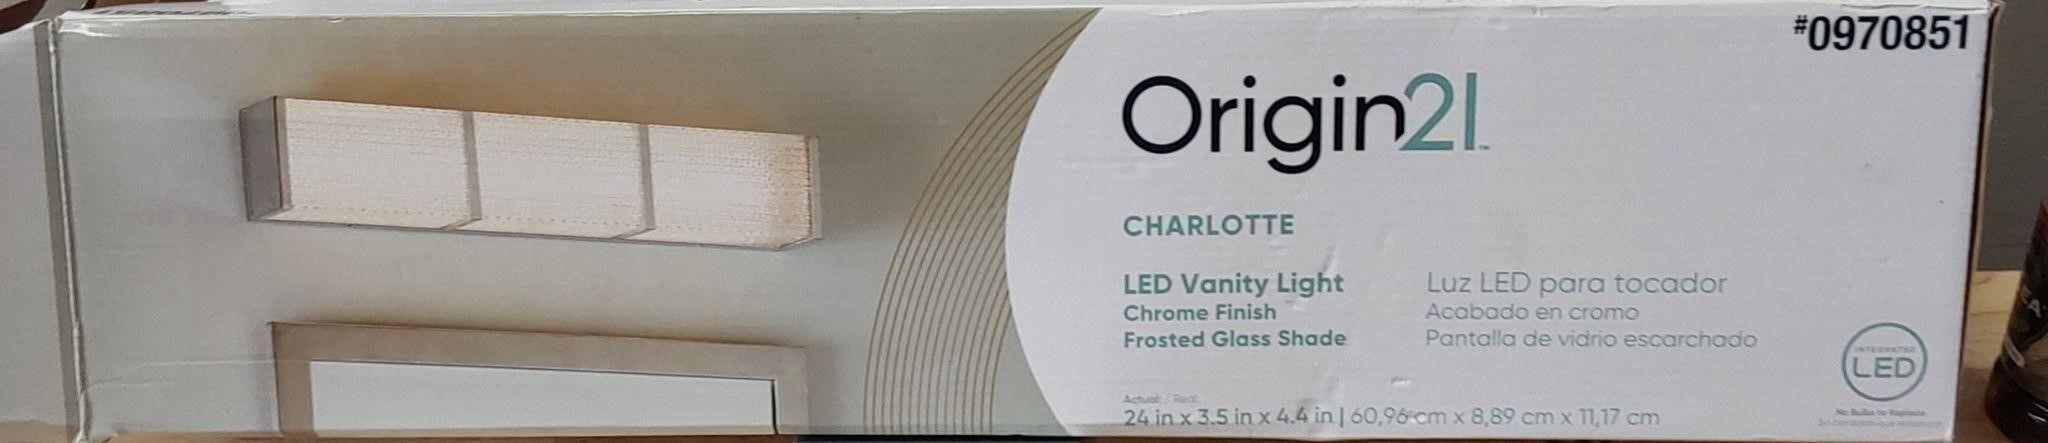 Origin 21 LED Vanity Light